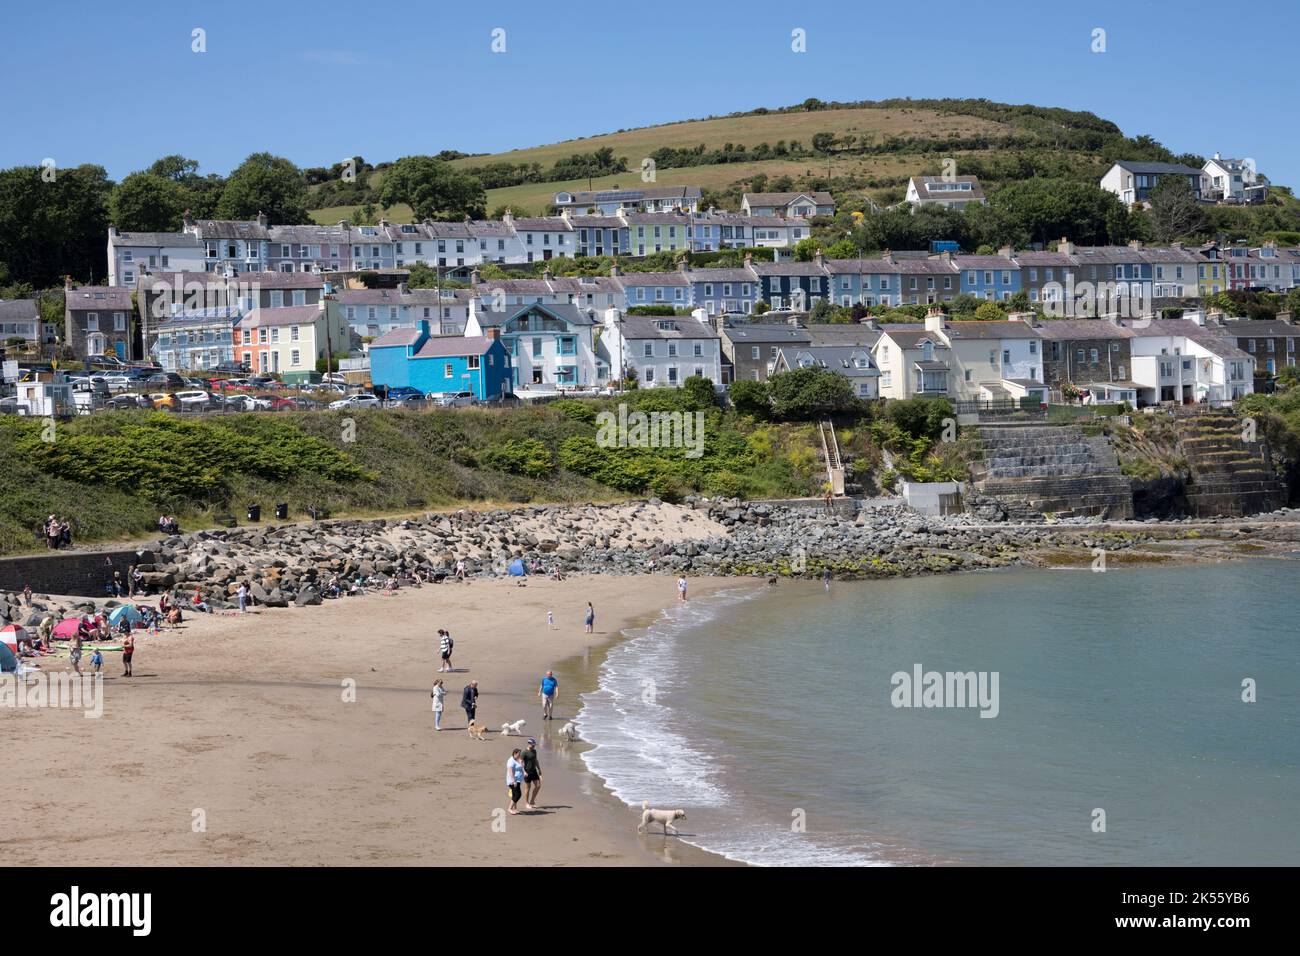 Dolau beach also known as Traeth y Dolau New Quay Ceredigion Wales Stock Photo